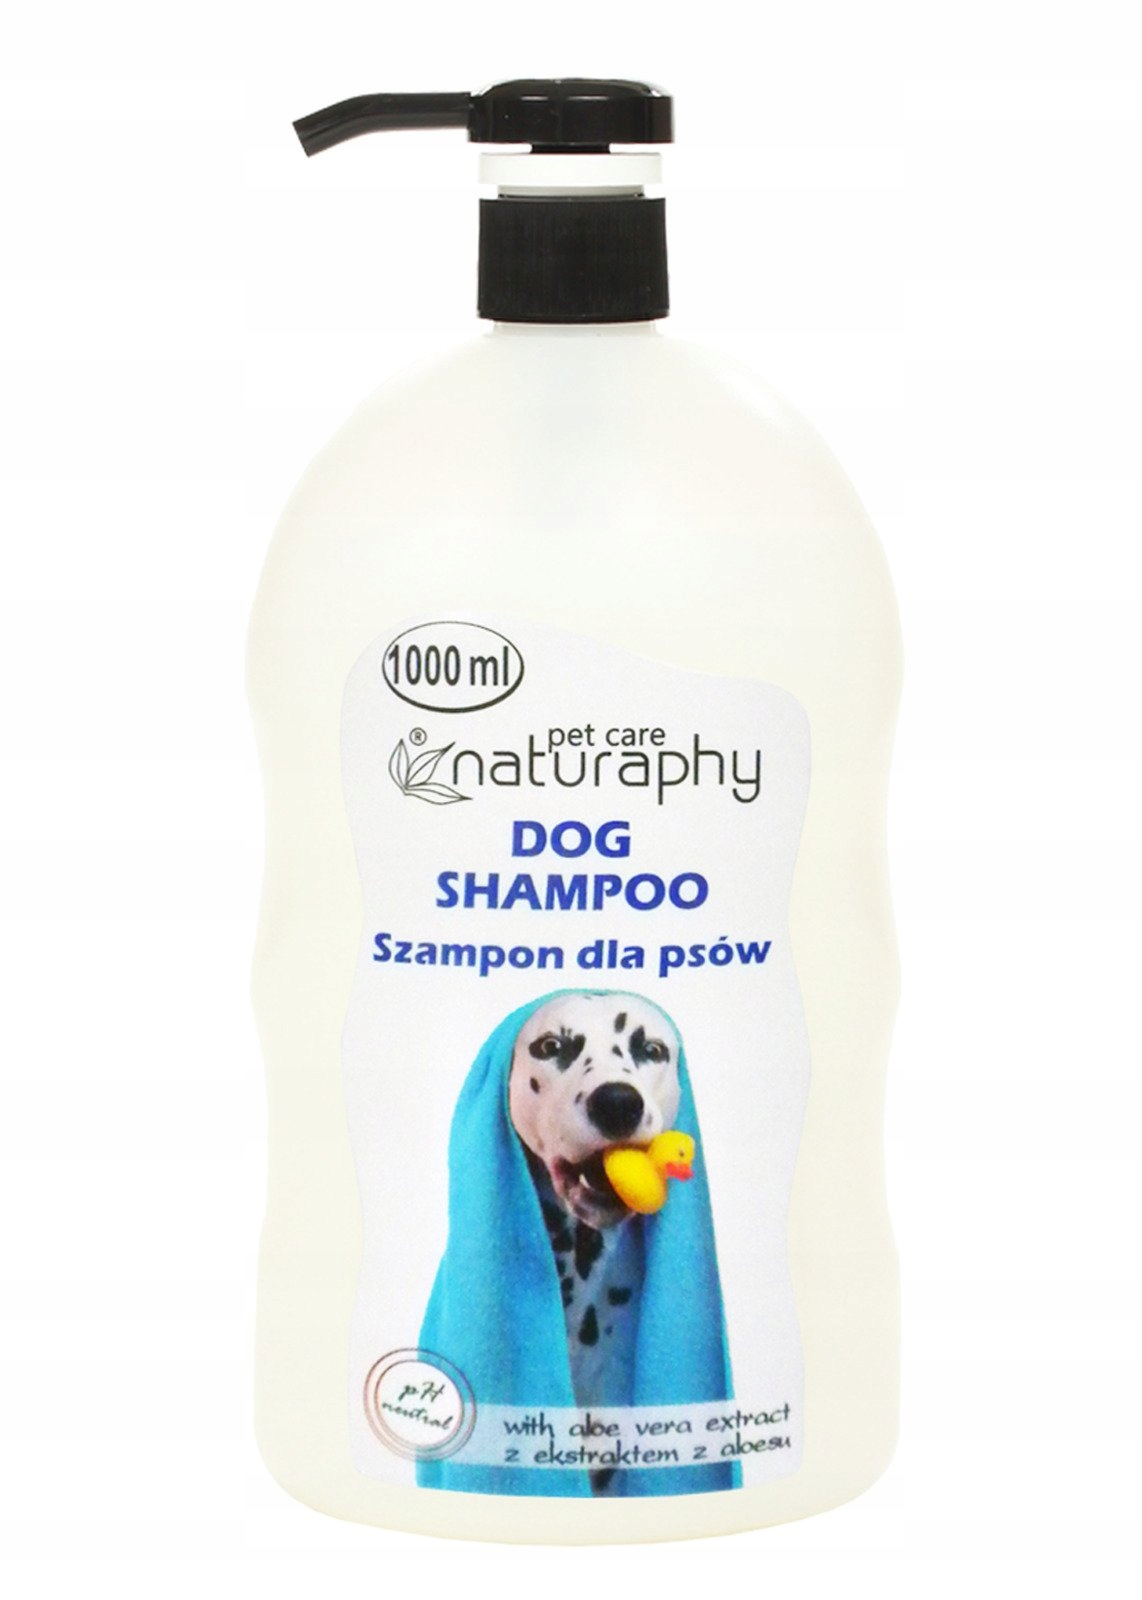 aw aloe szampon dla psów